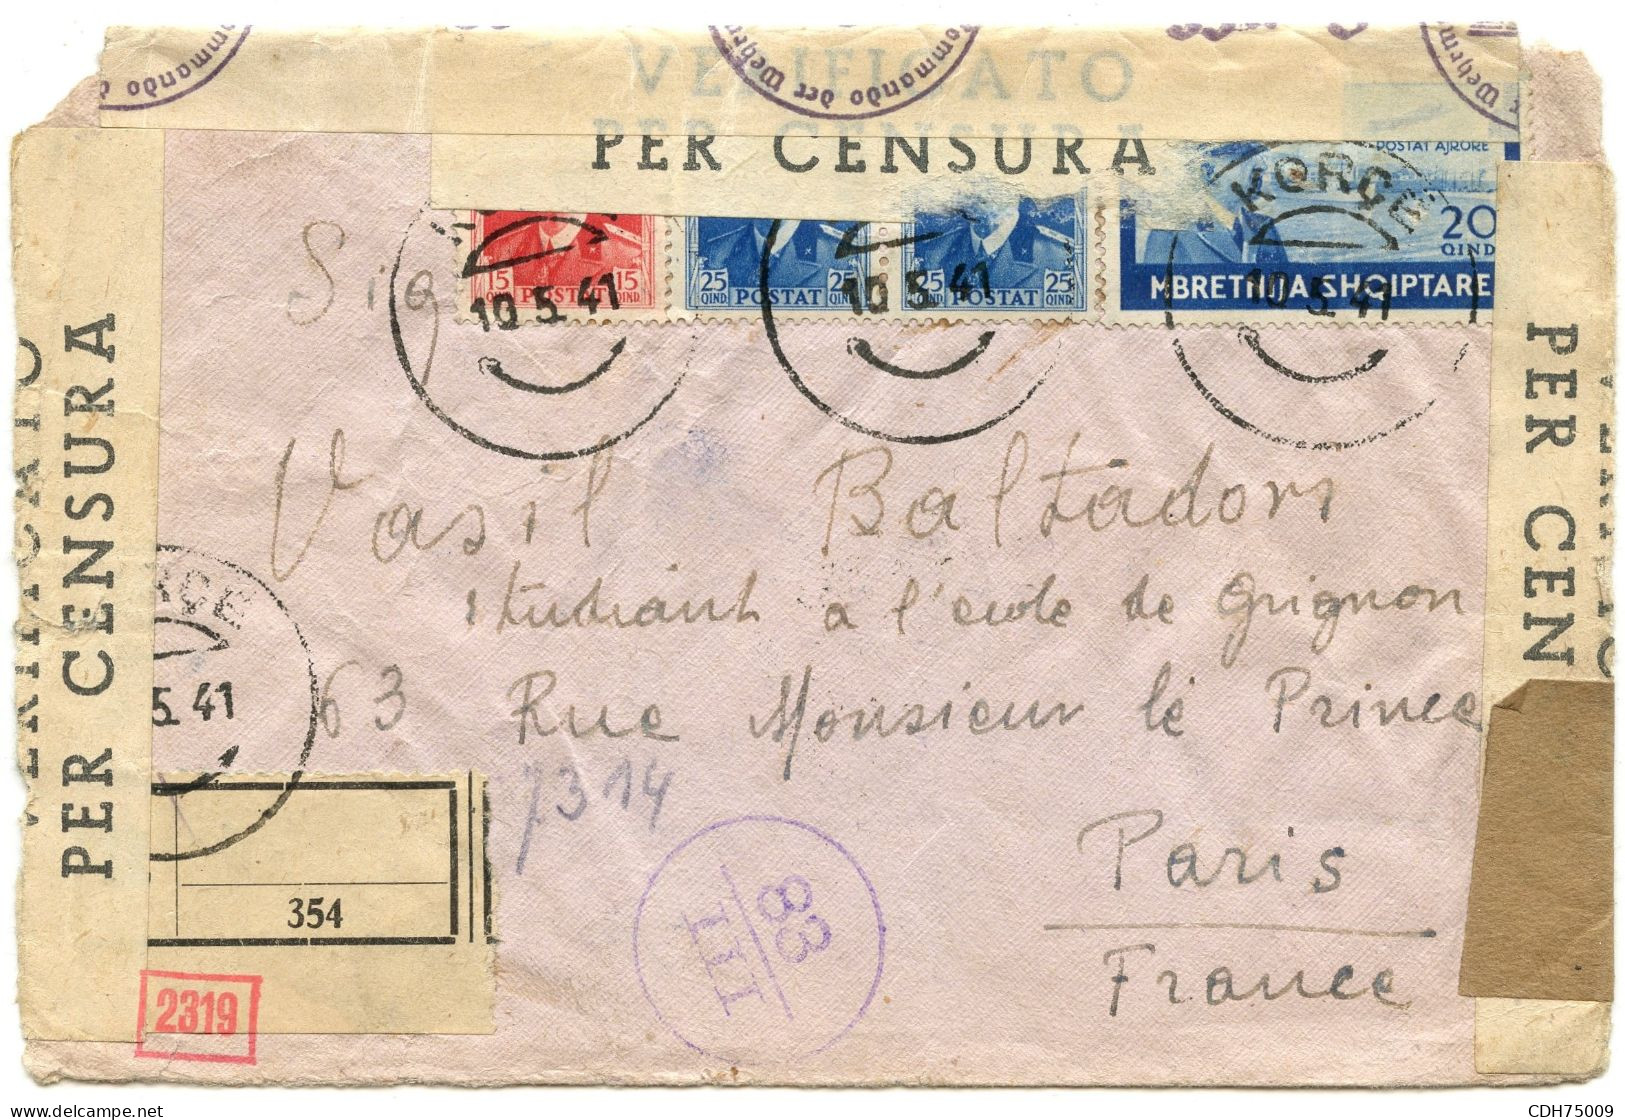 ITALIE - LETTRE RECOMMANDEE CENSUREE DE KORCE POUR PARIS, 1941 - Albania